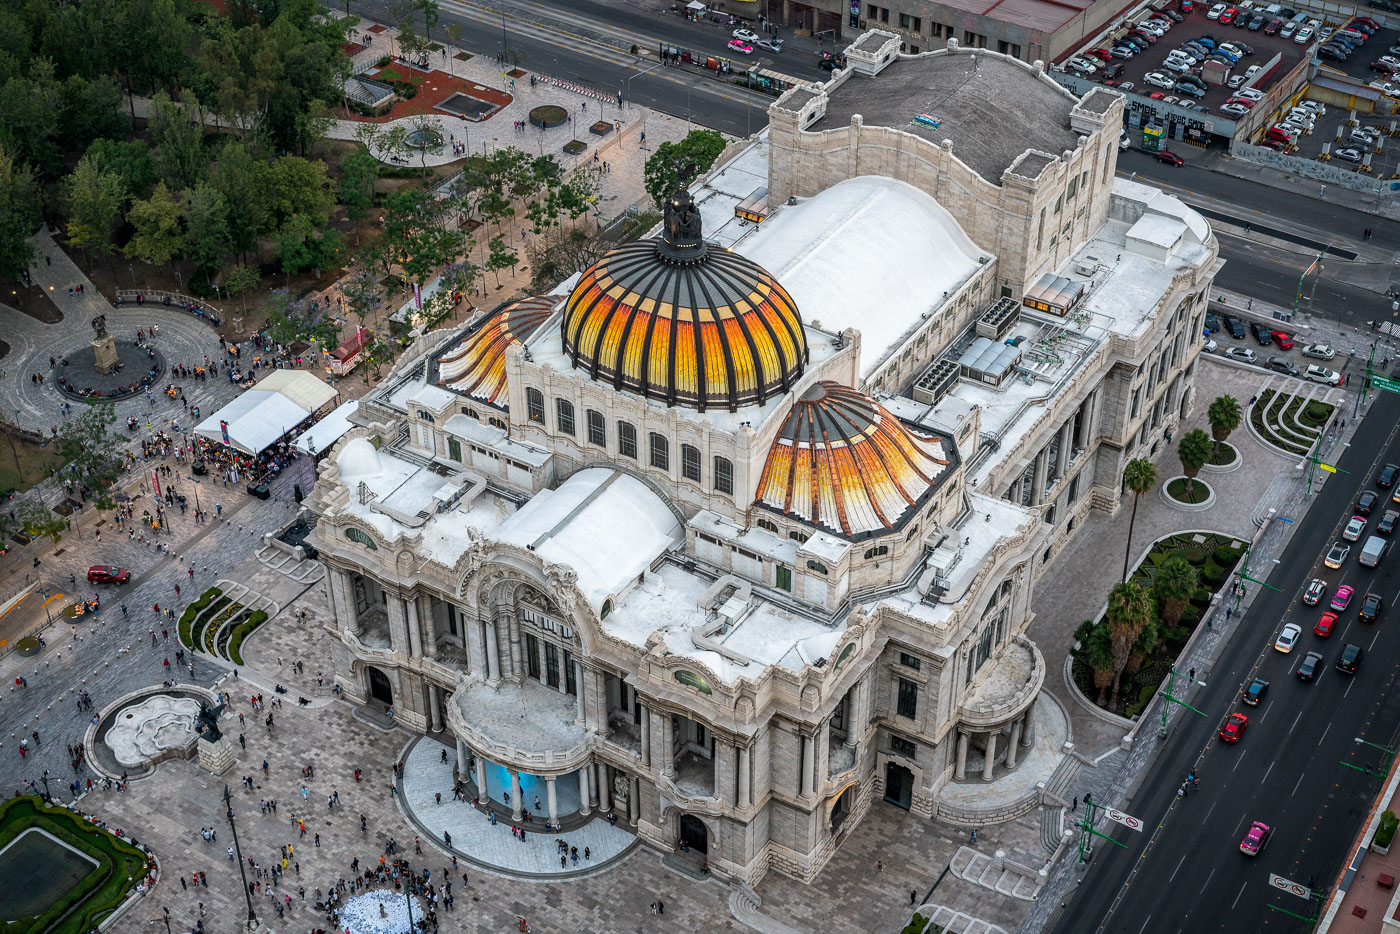 Palacio de Bellas Artes in Mexico City 2018